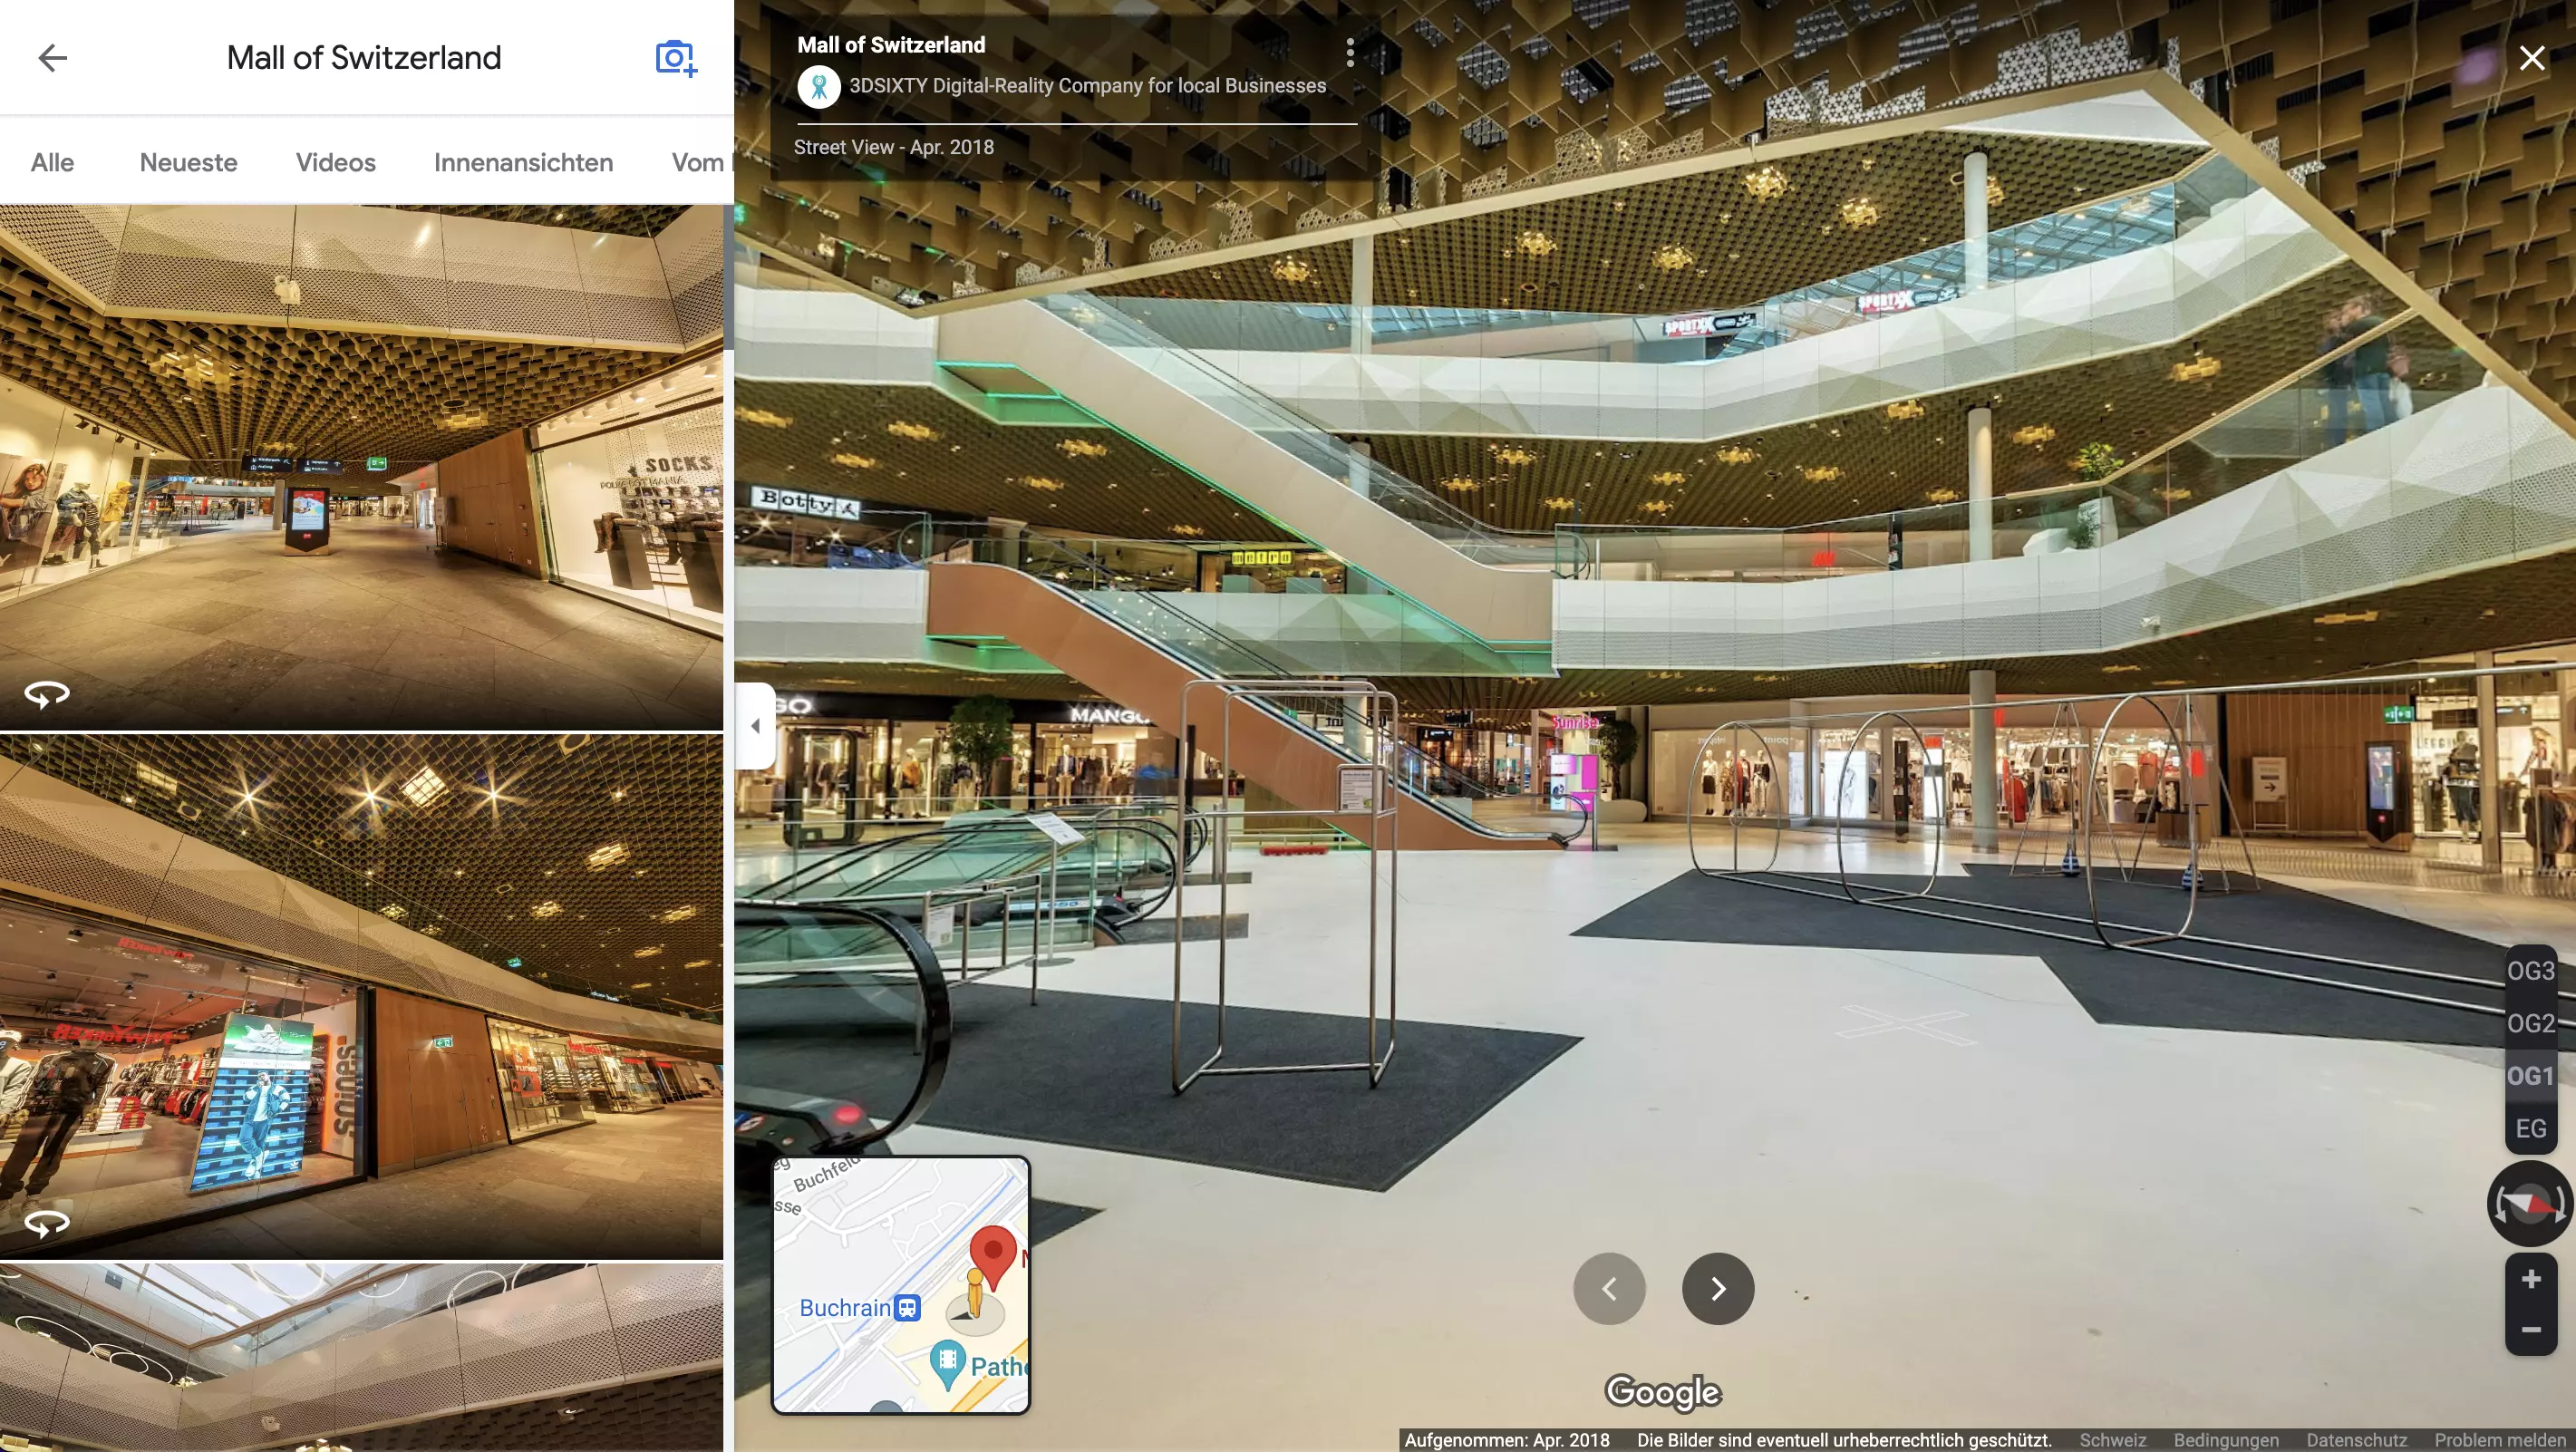 Google Street View - Mall of Switzerland